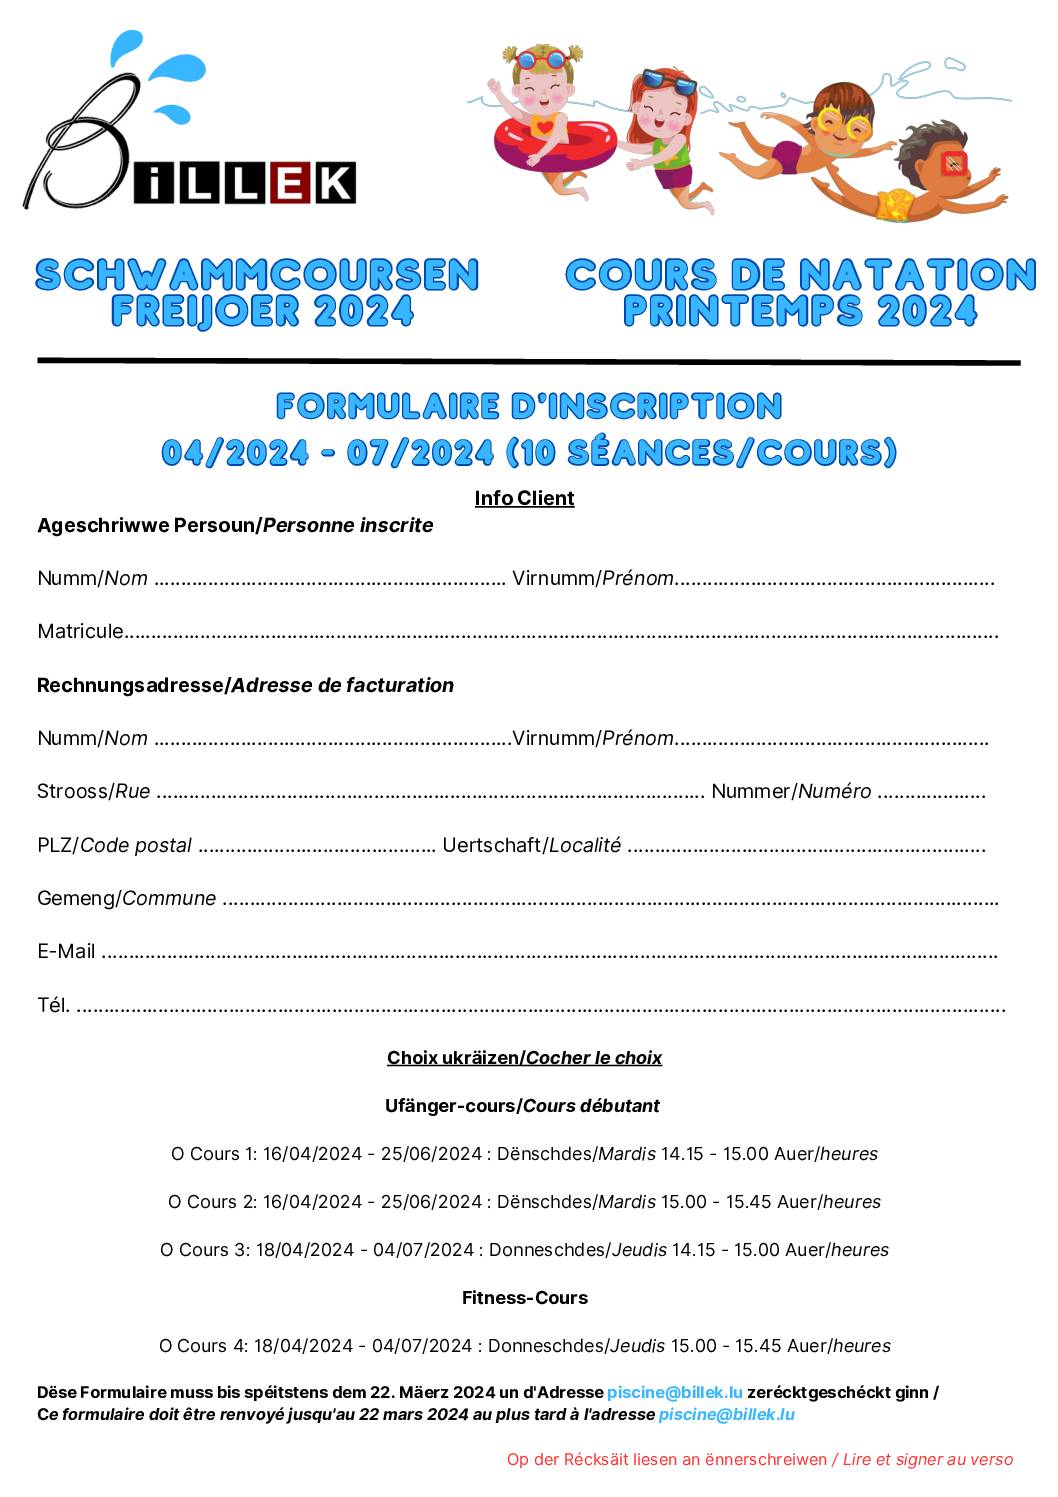 Schwammcoursen-Freijoer-2024-Inscription